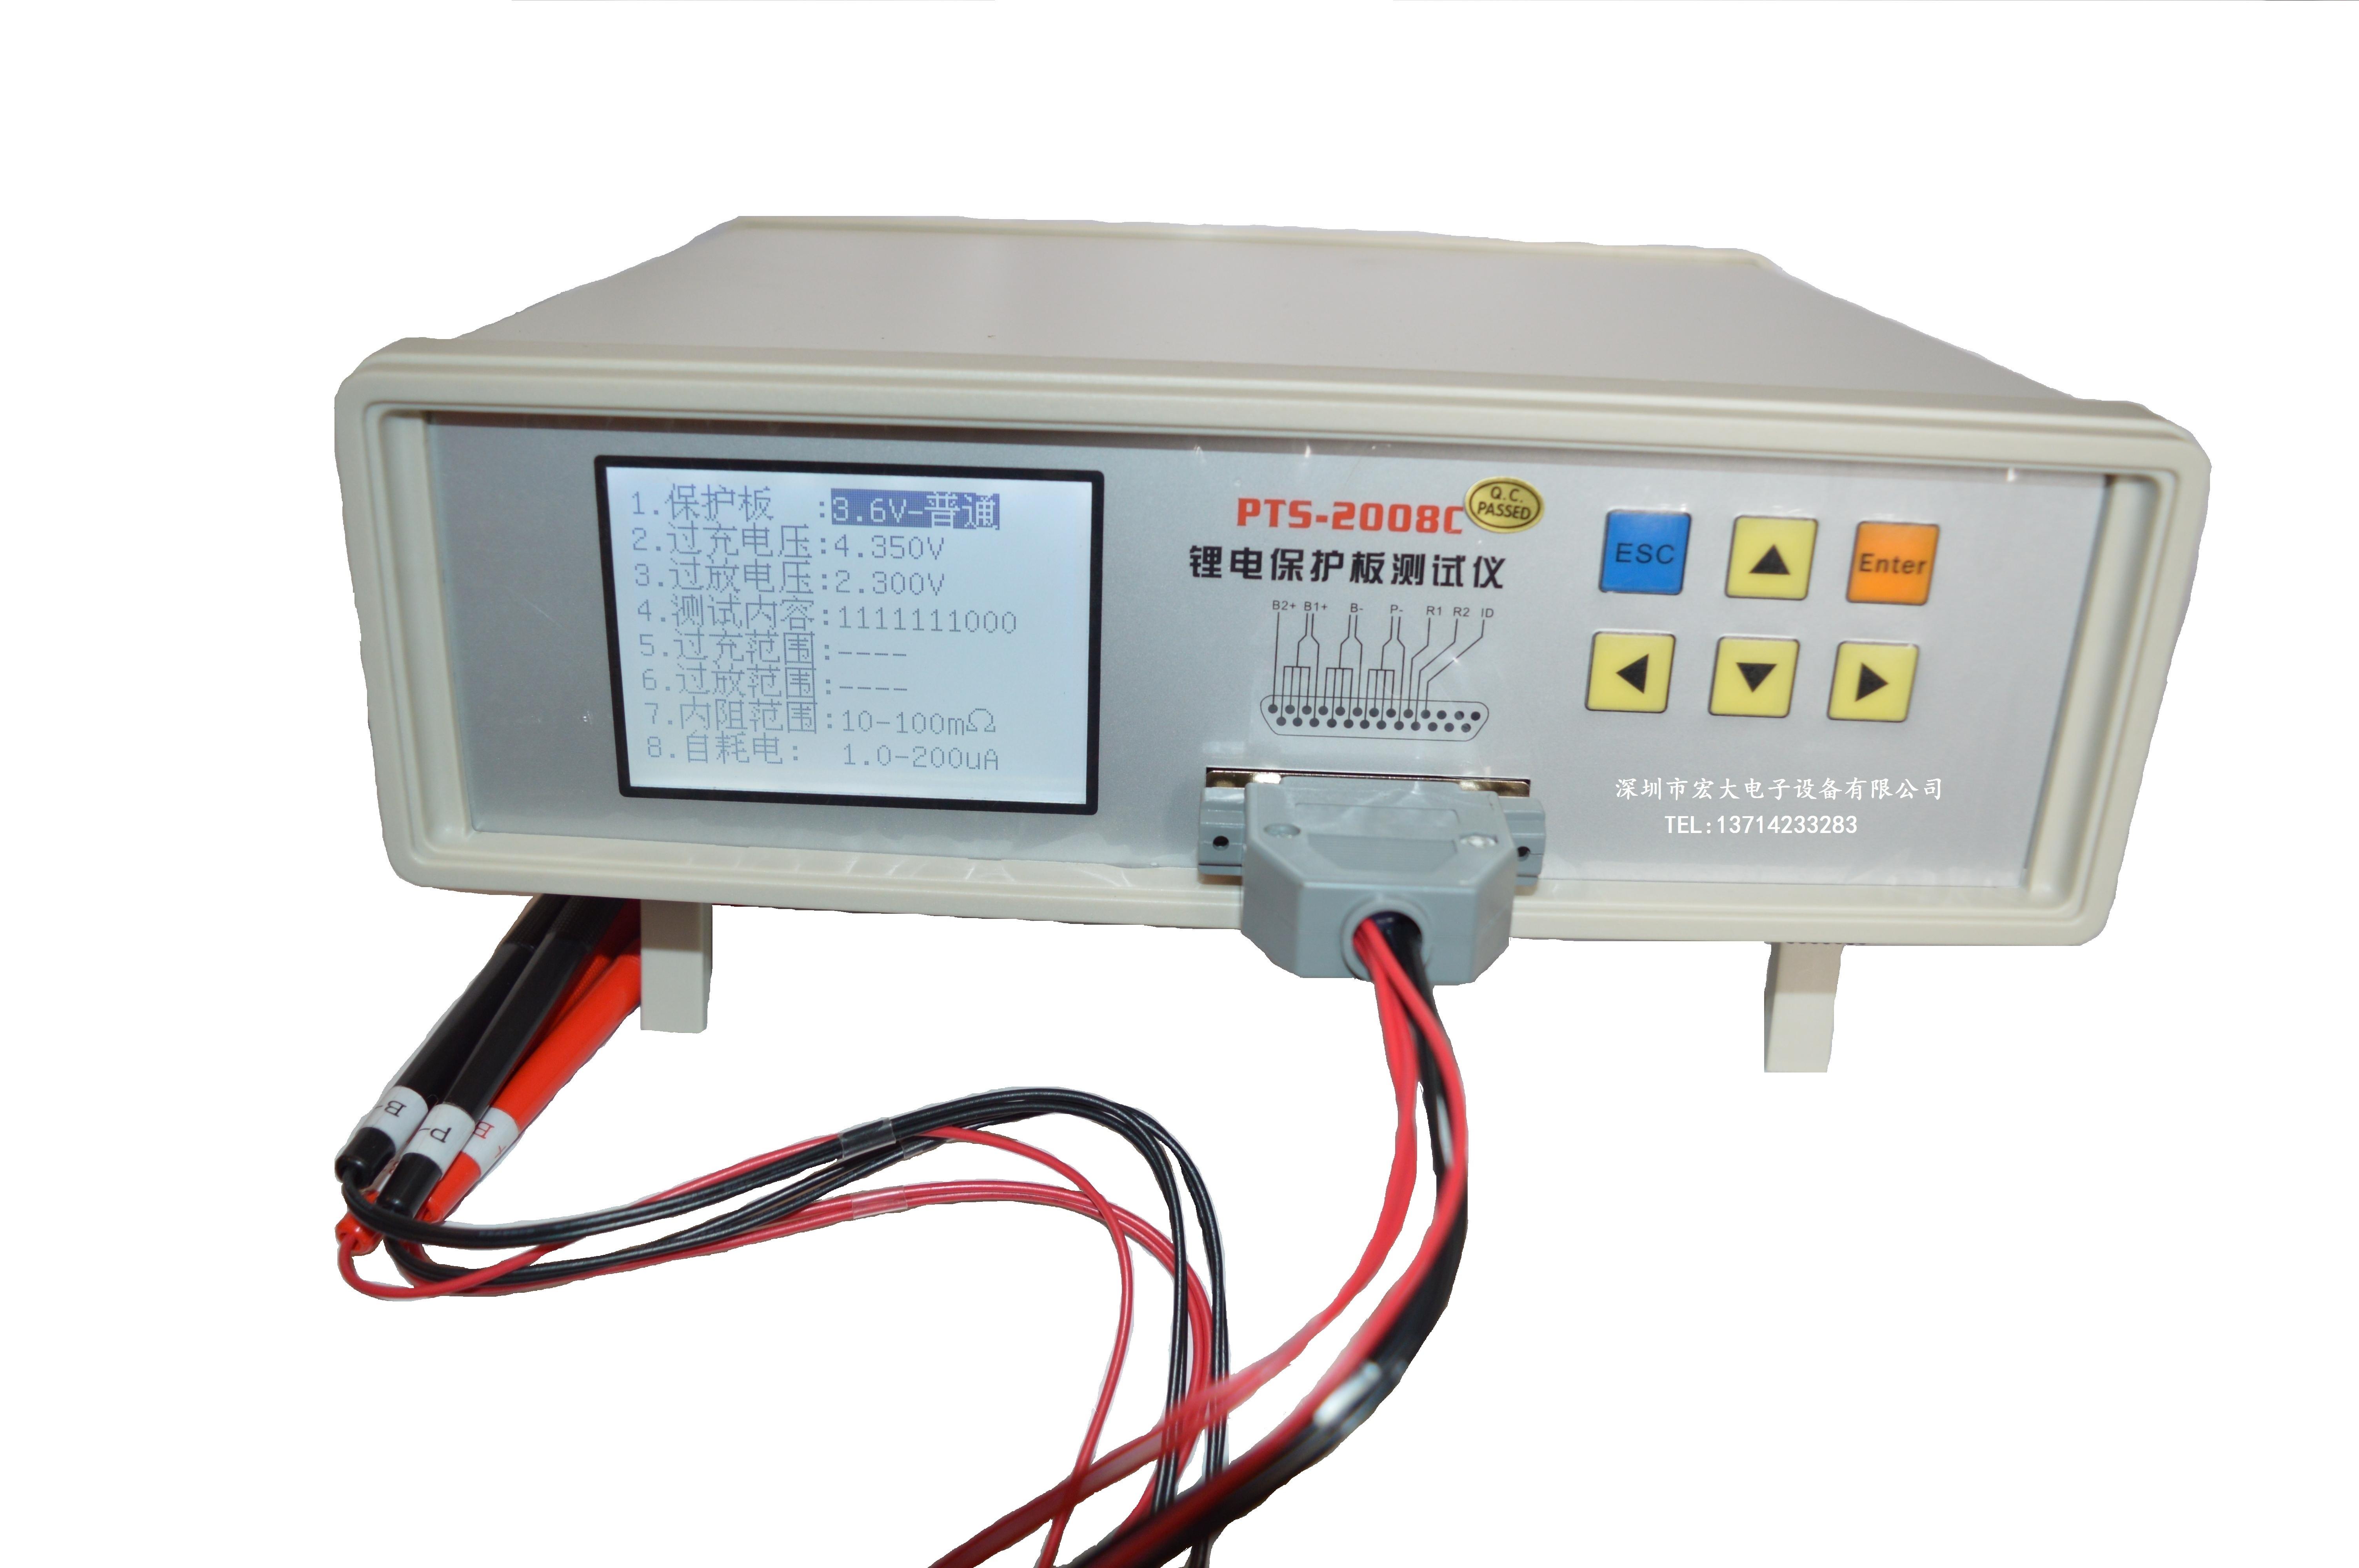 PTS-2008C锂电池保护板测试仪数码电池保护板检测仪